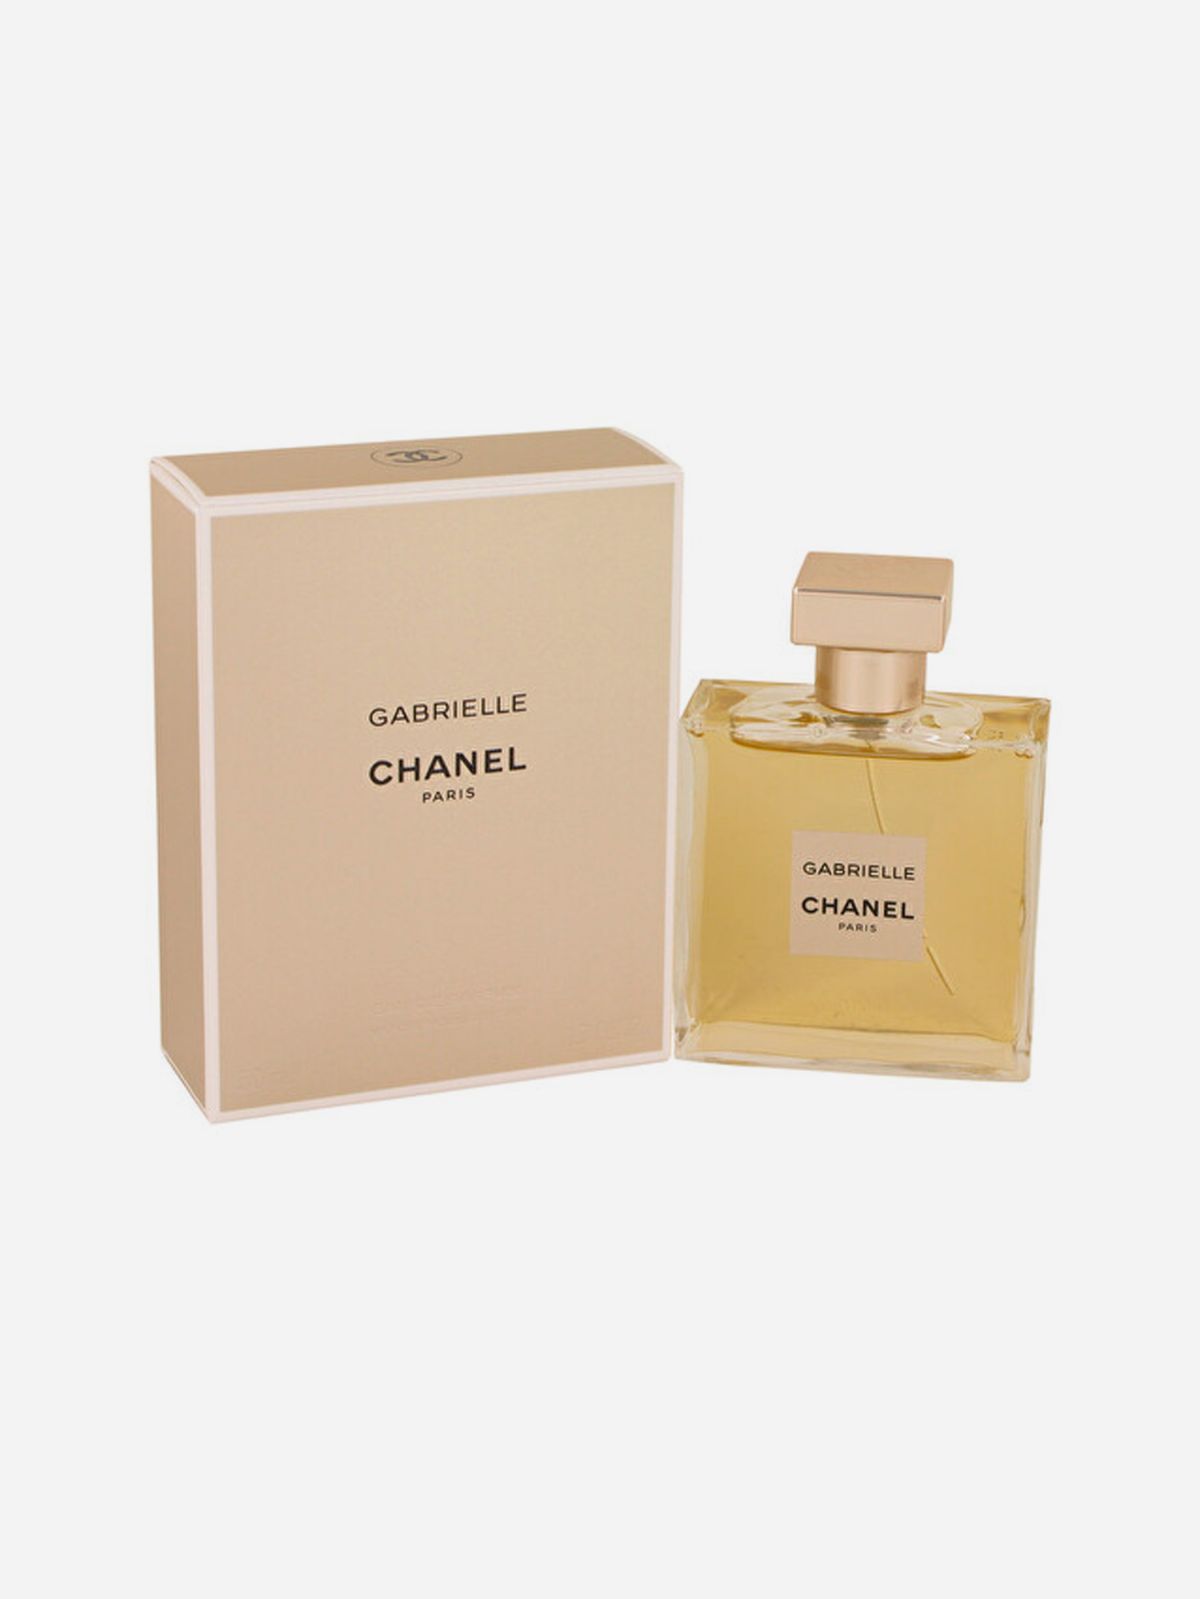  בושם לאישה Chanel Gabrielle של CHANEL